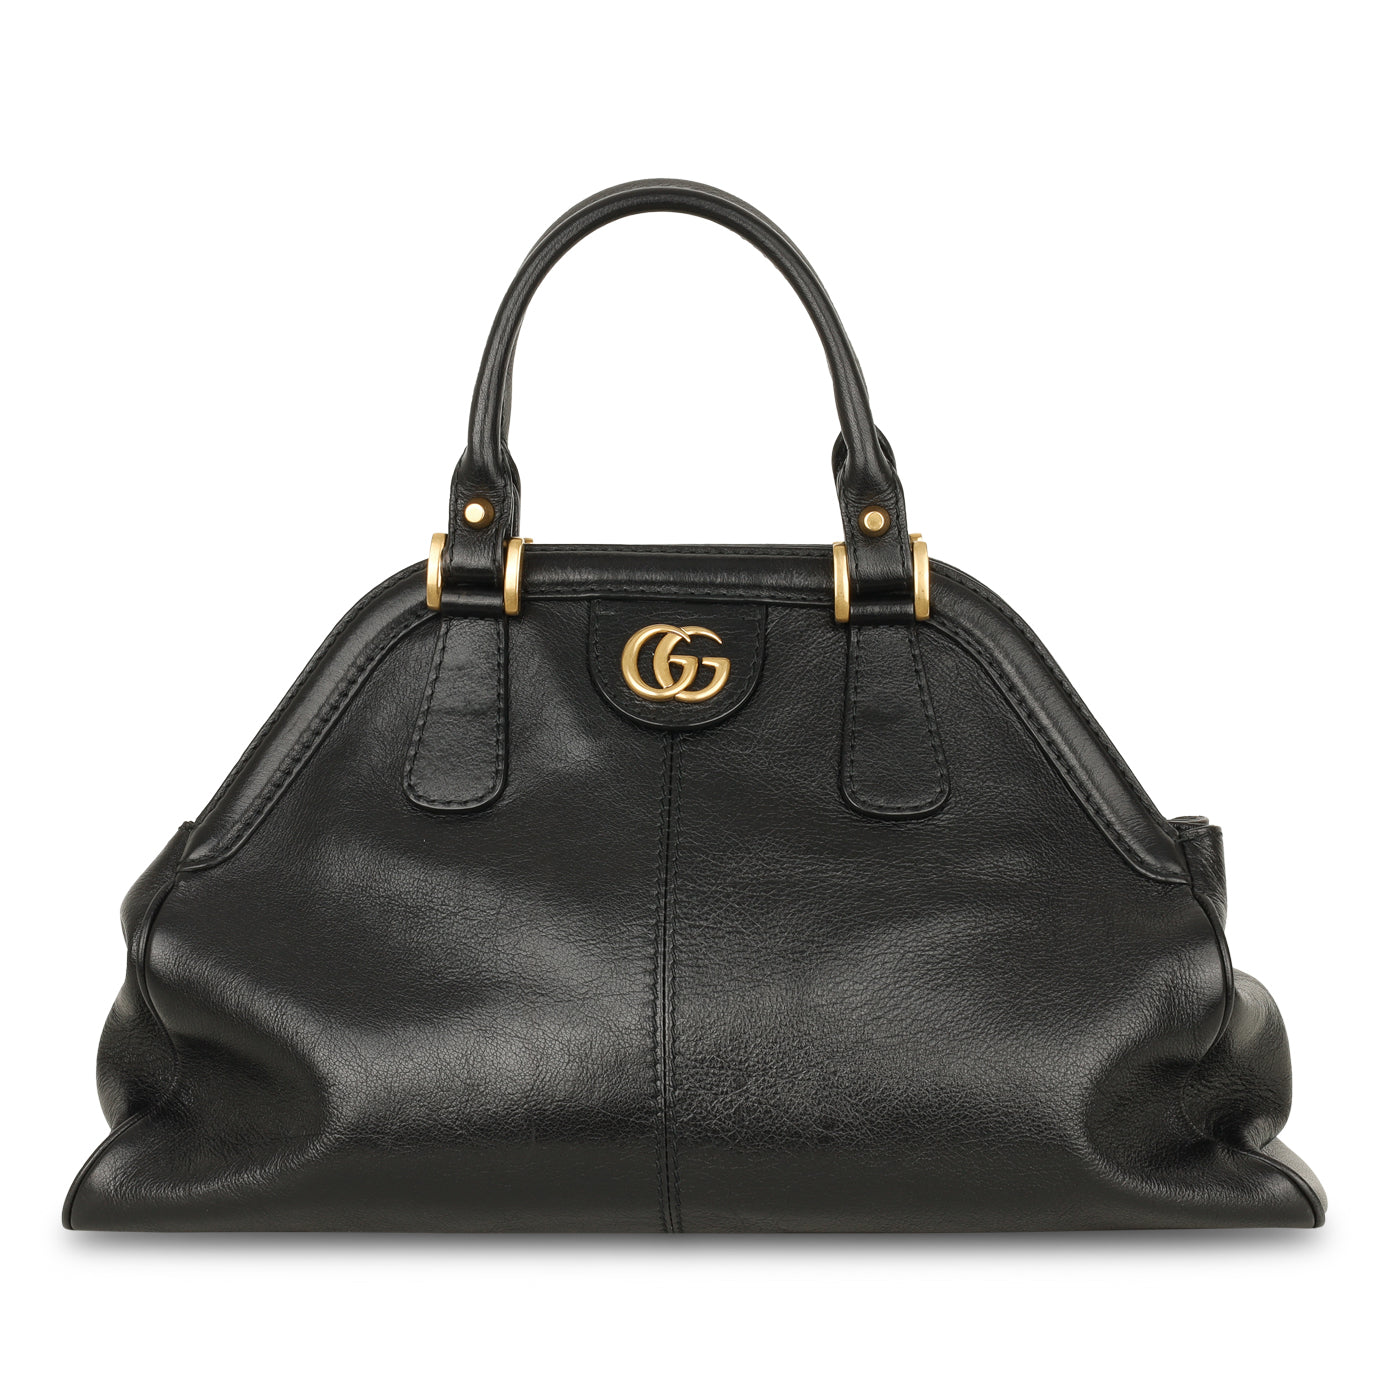 Gucci - Rebelle Shoulder Bag - Black Calfskin - Excellent